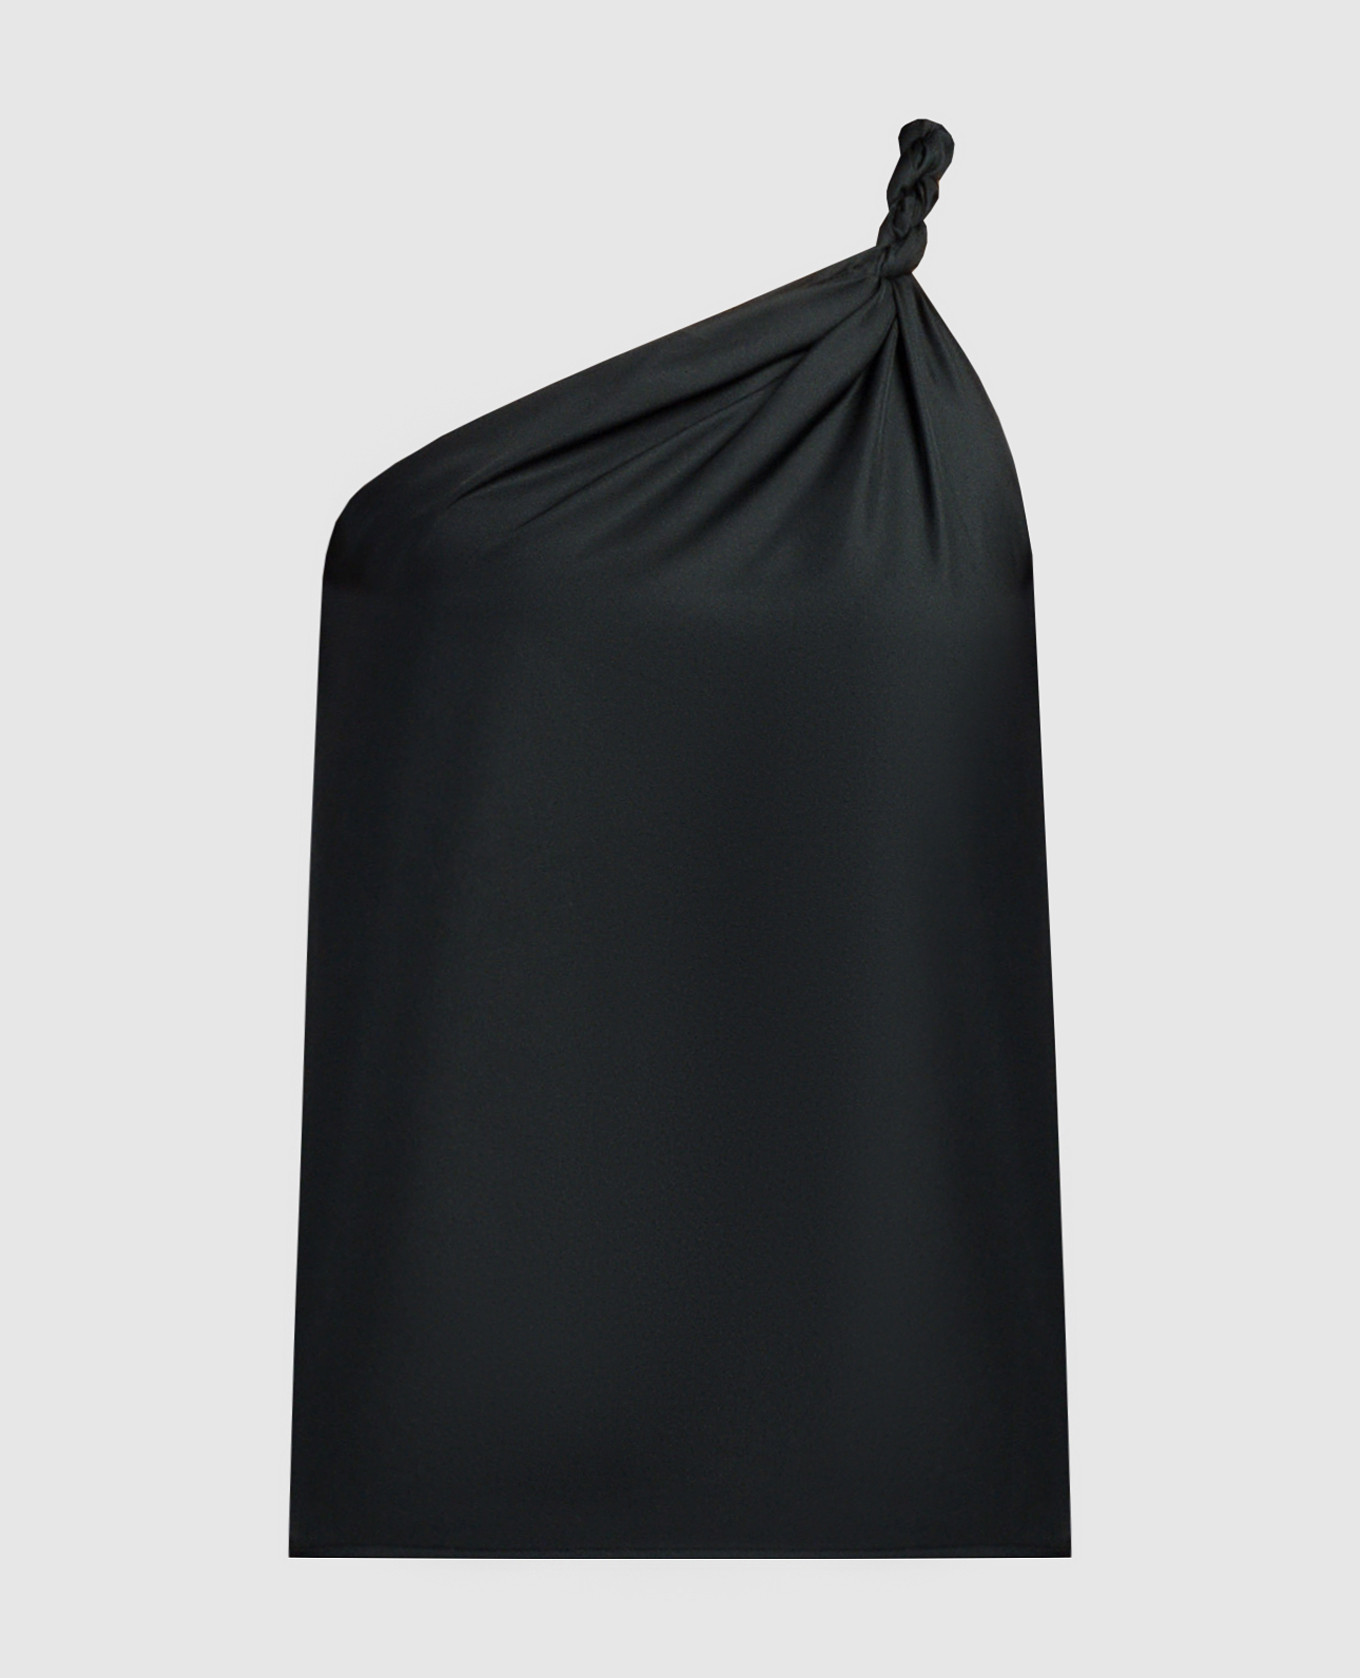 Black top ADIRAN made of silk